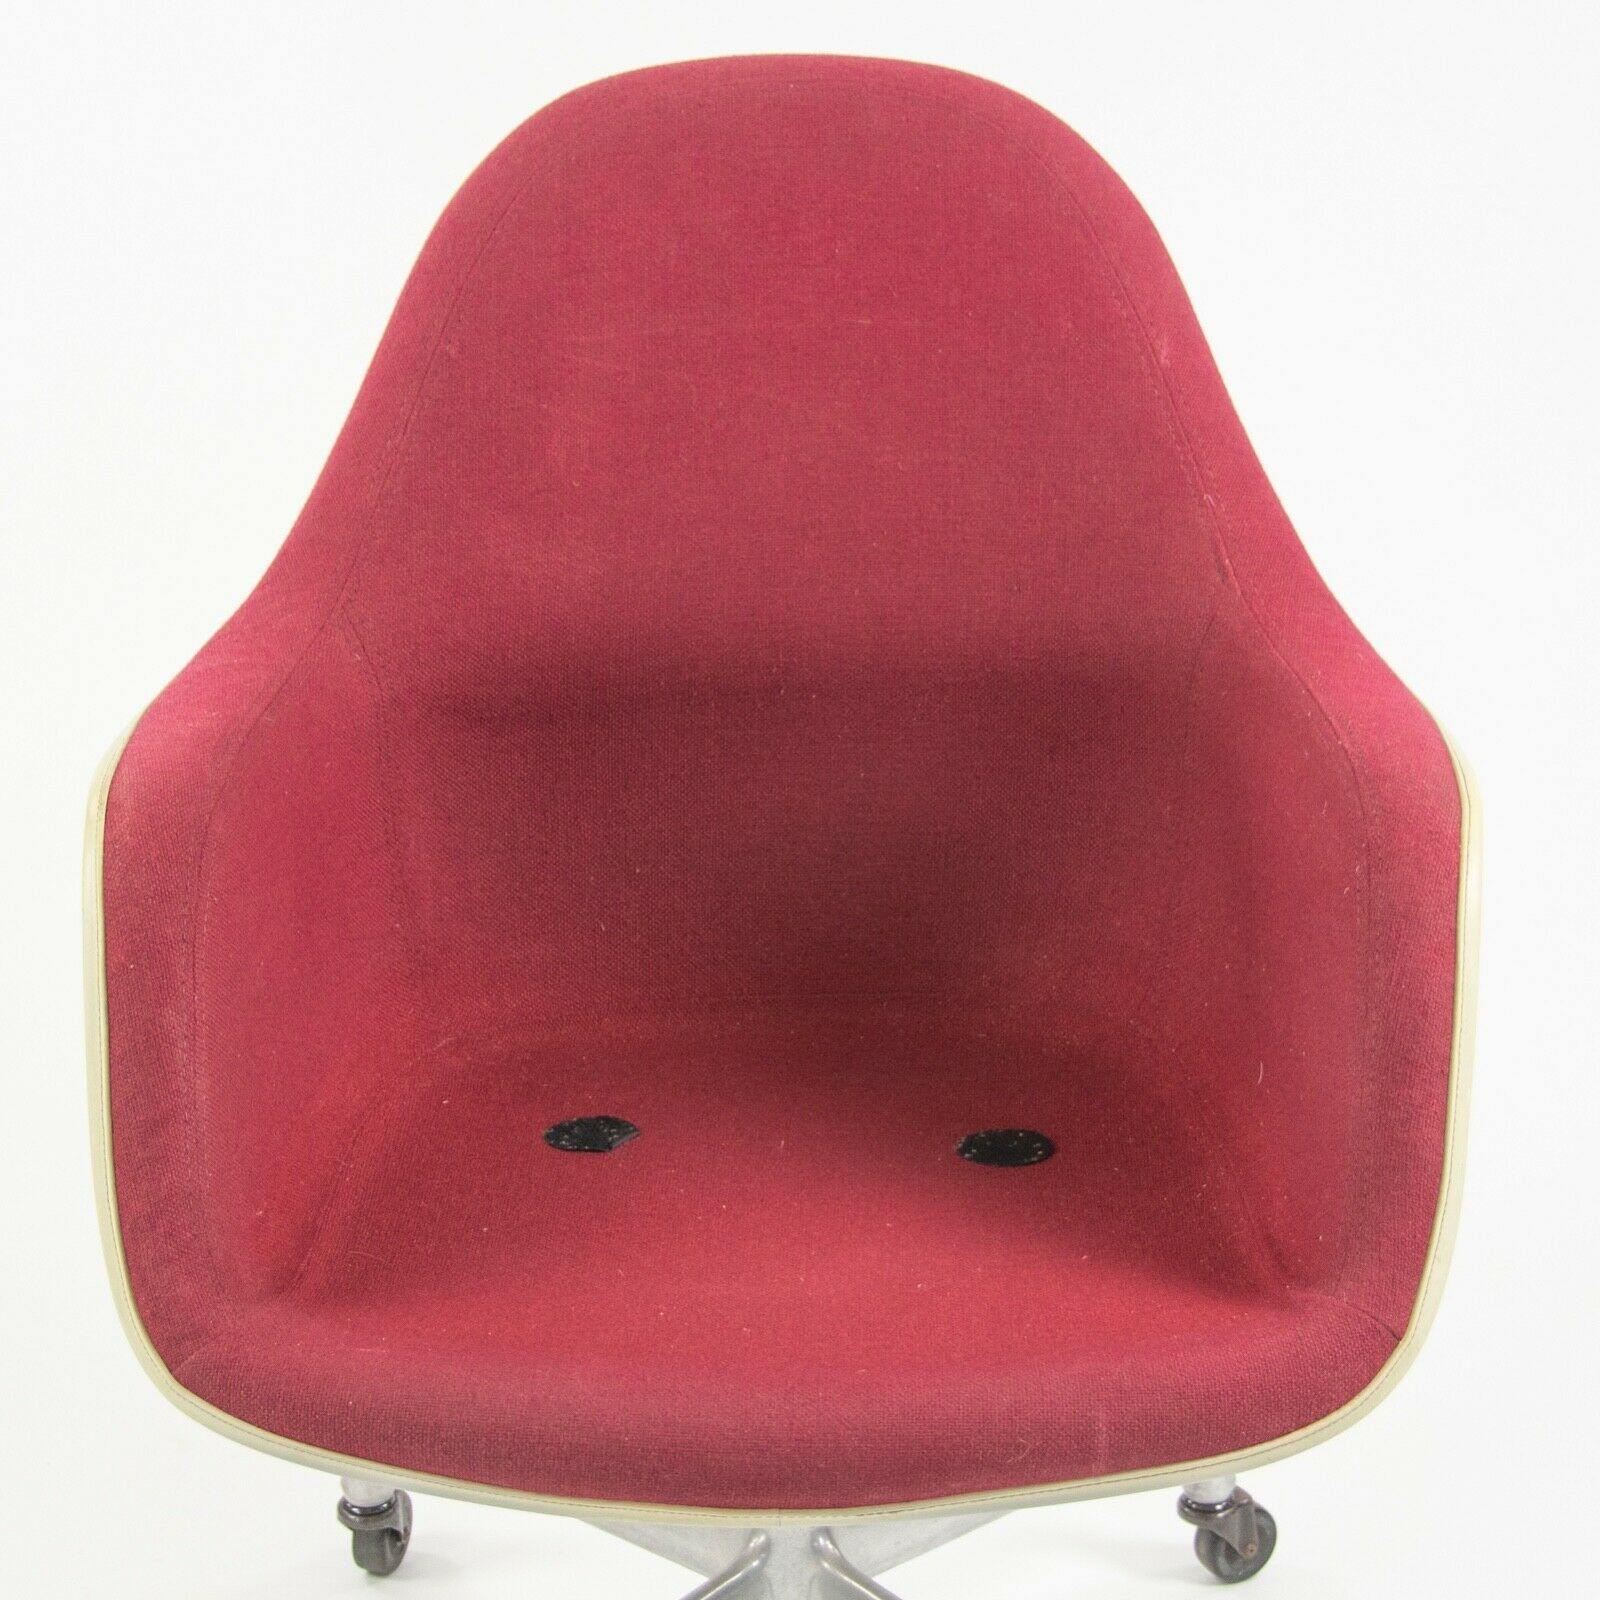 EC175 Chair